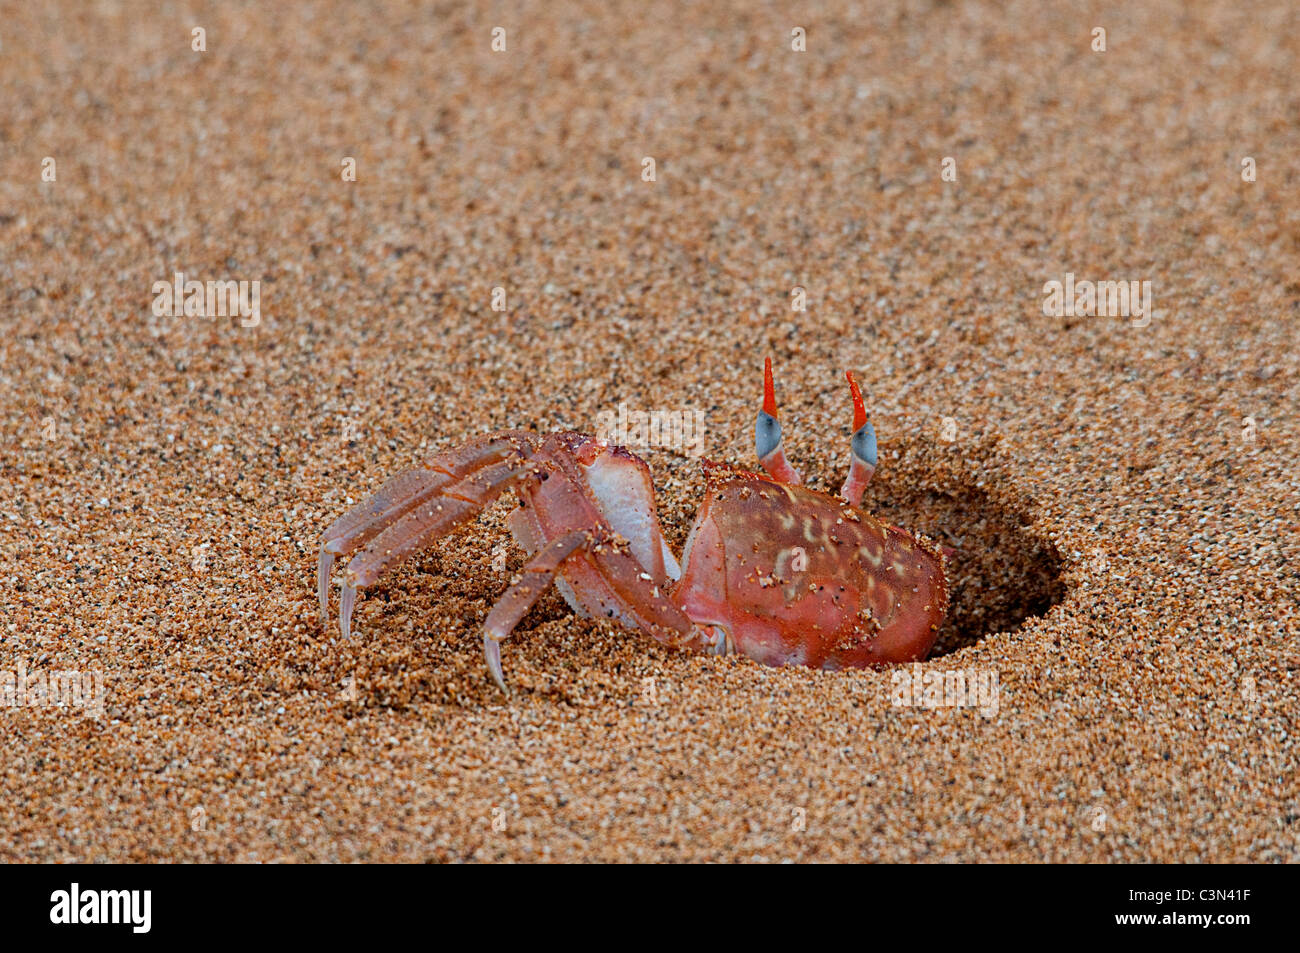 Ghost crab (Ocypode gaudichaudii) emerging from a hole on a beach Floreana Galapagos Ecuador South America Pacific Ocean Stock Photo